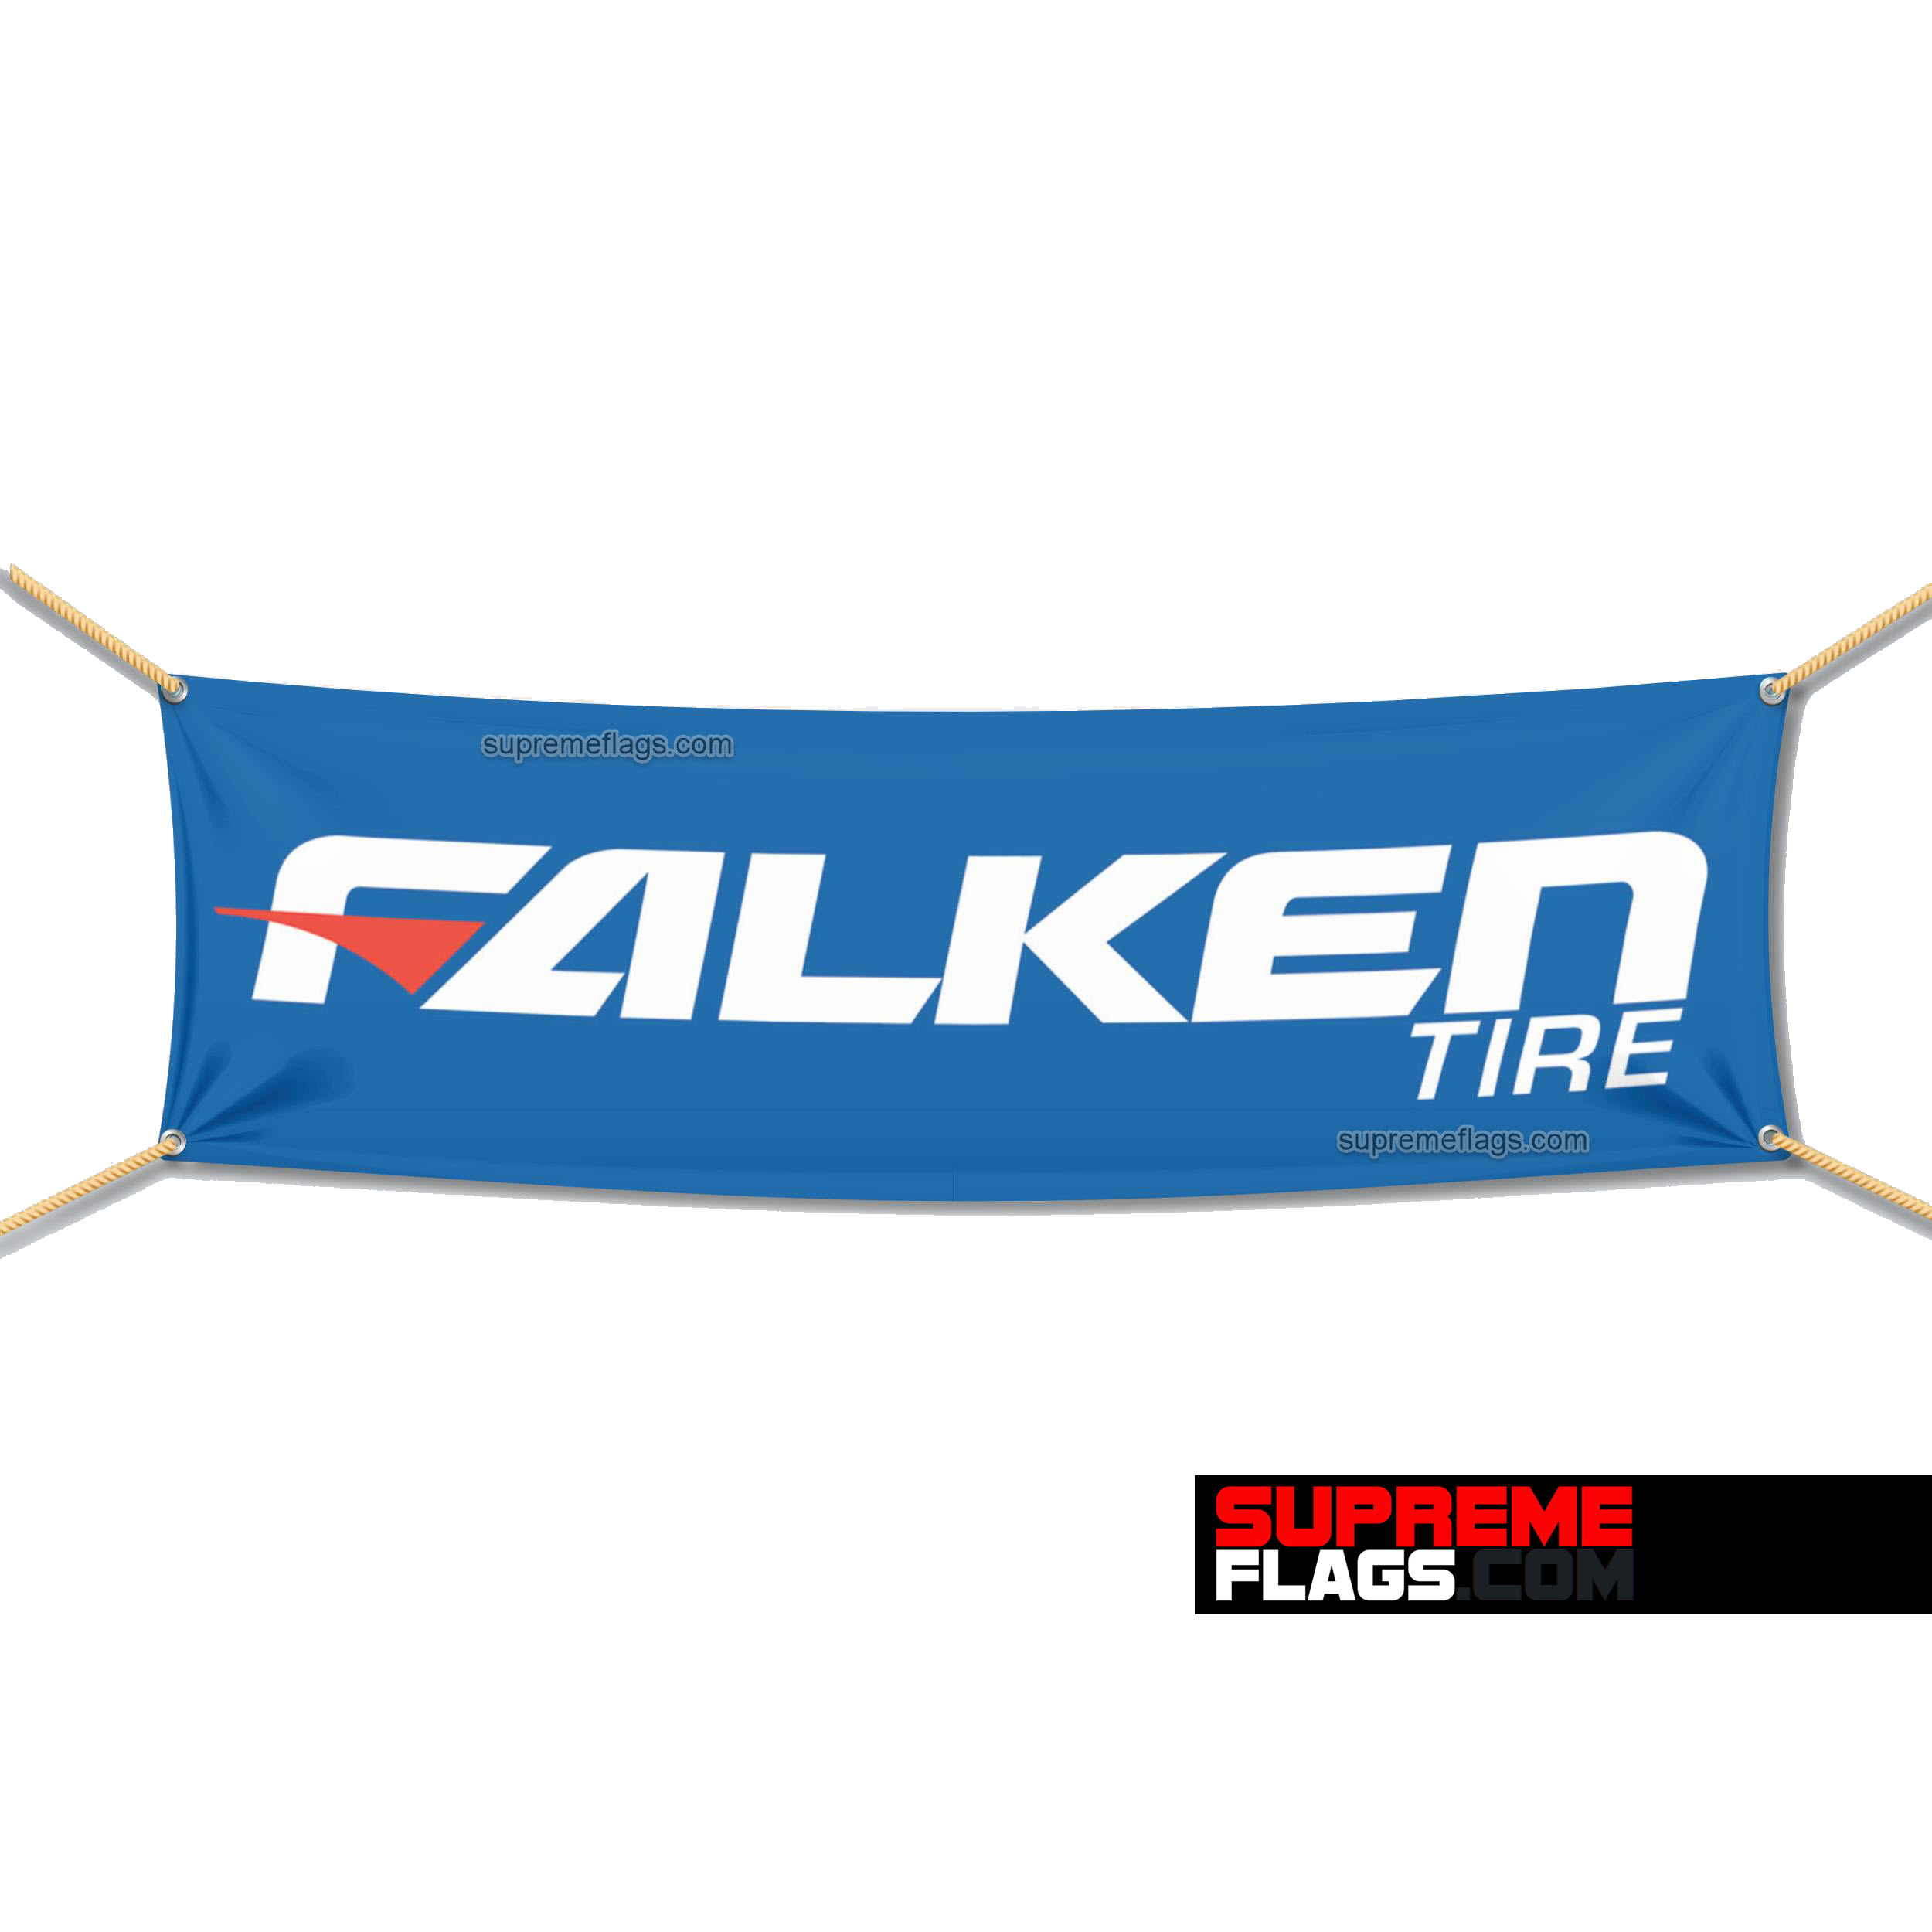 Falken Tire Flag 1.5x5 ft (3041)